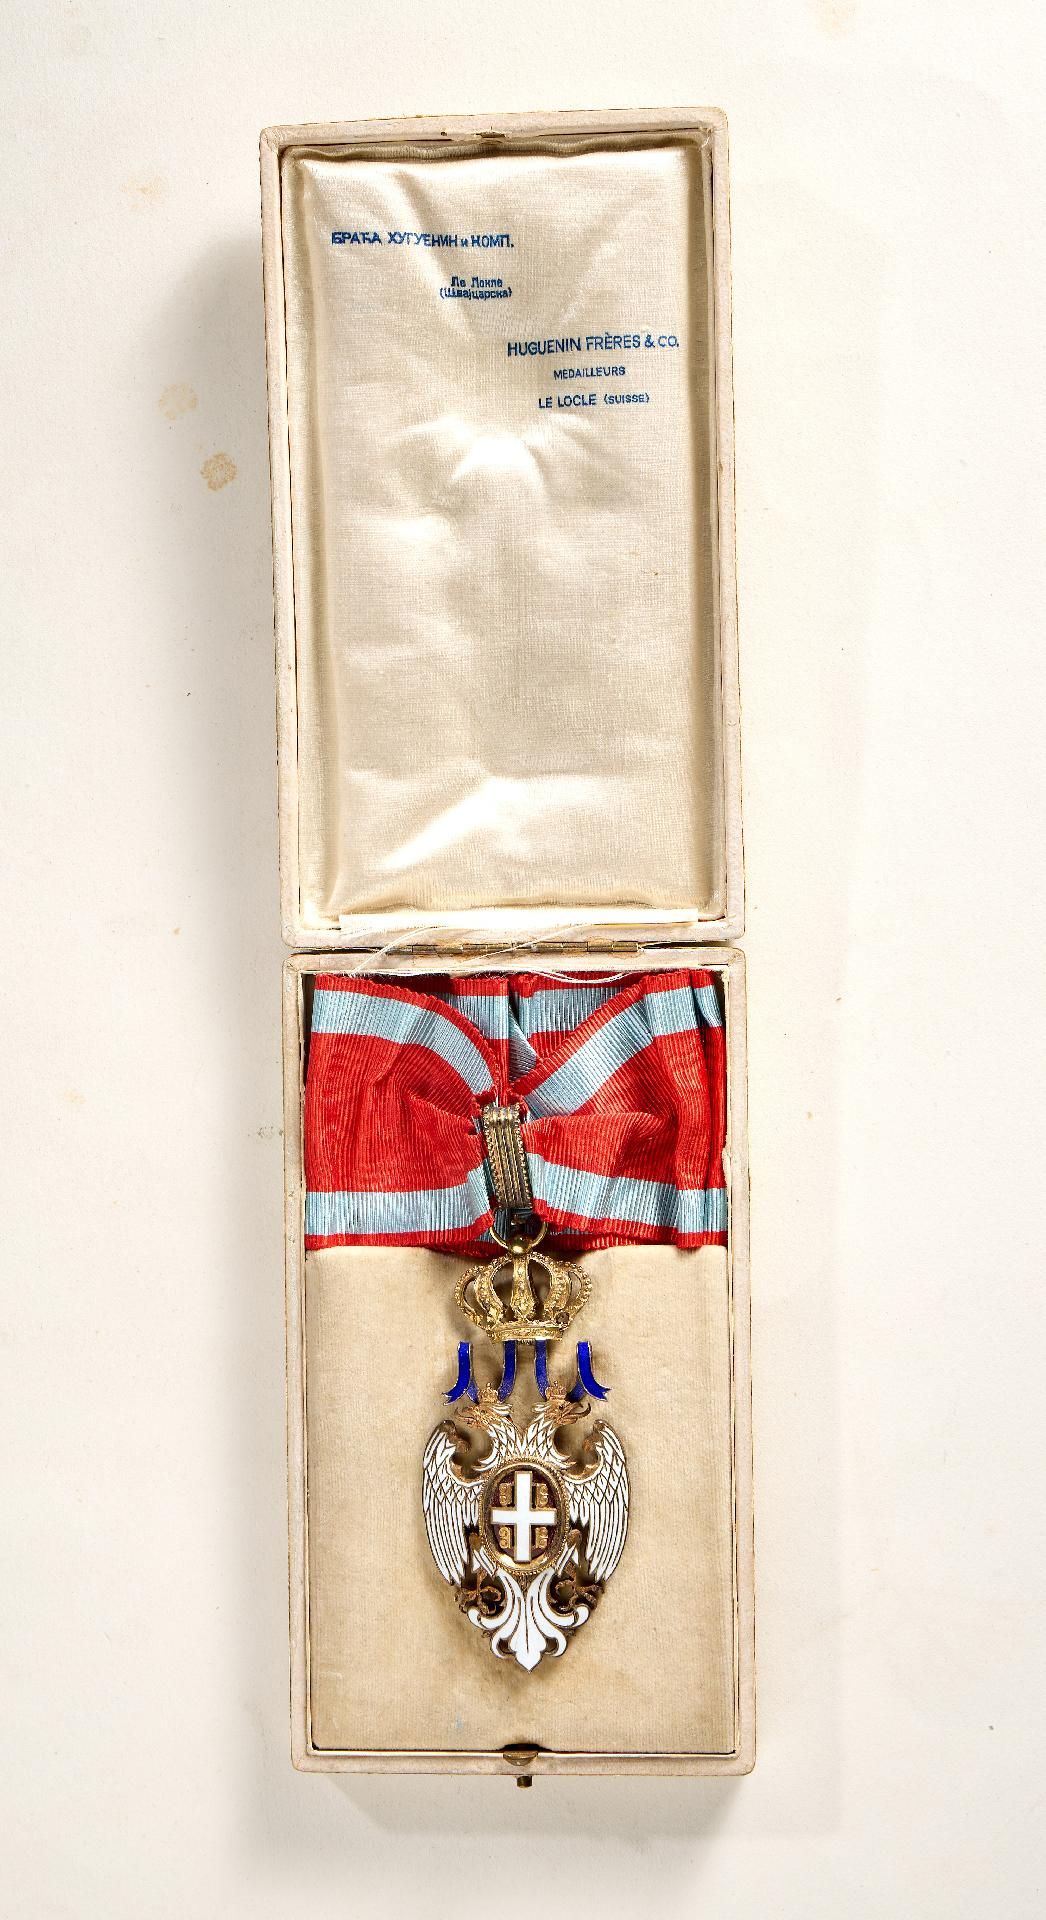 Serbien : Serbien: Orden vom Weißen Adler, Kommandeurdekoration (3. Klasse). - Image 3 of 5